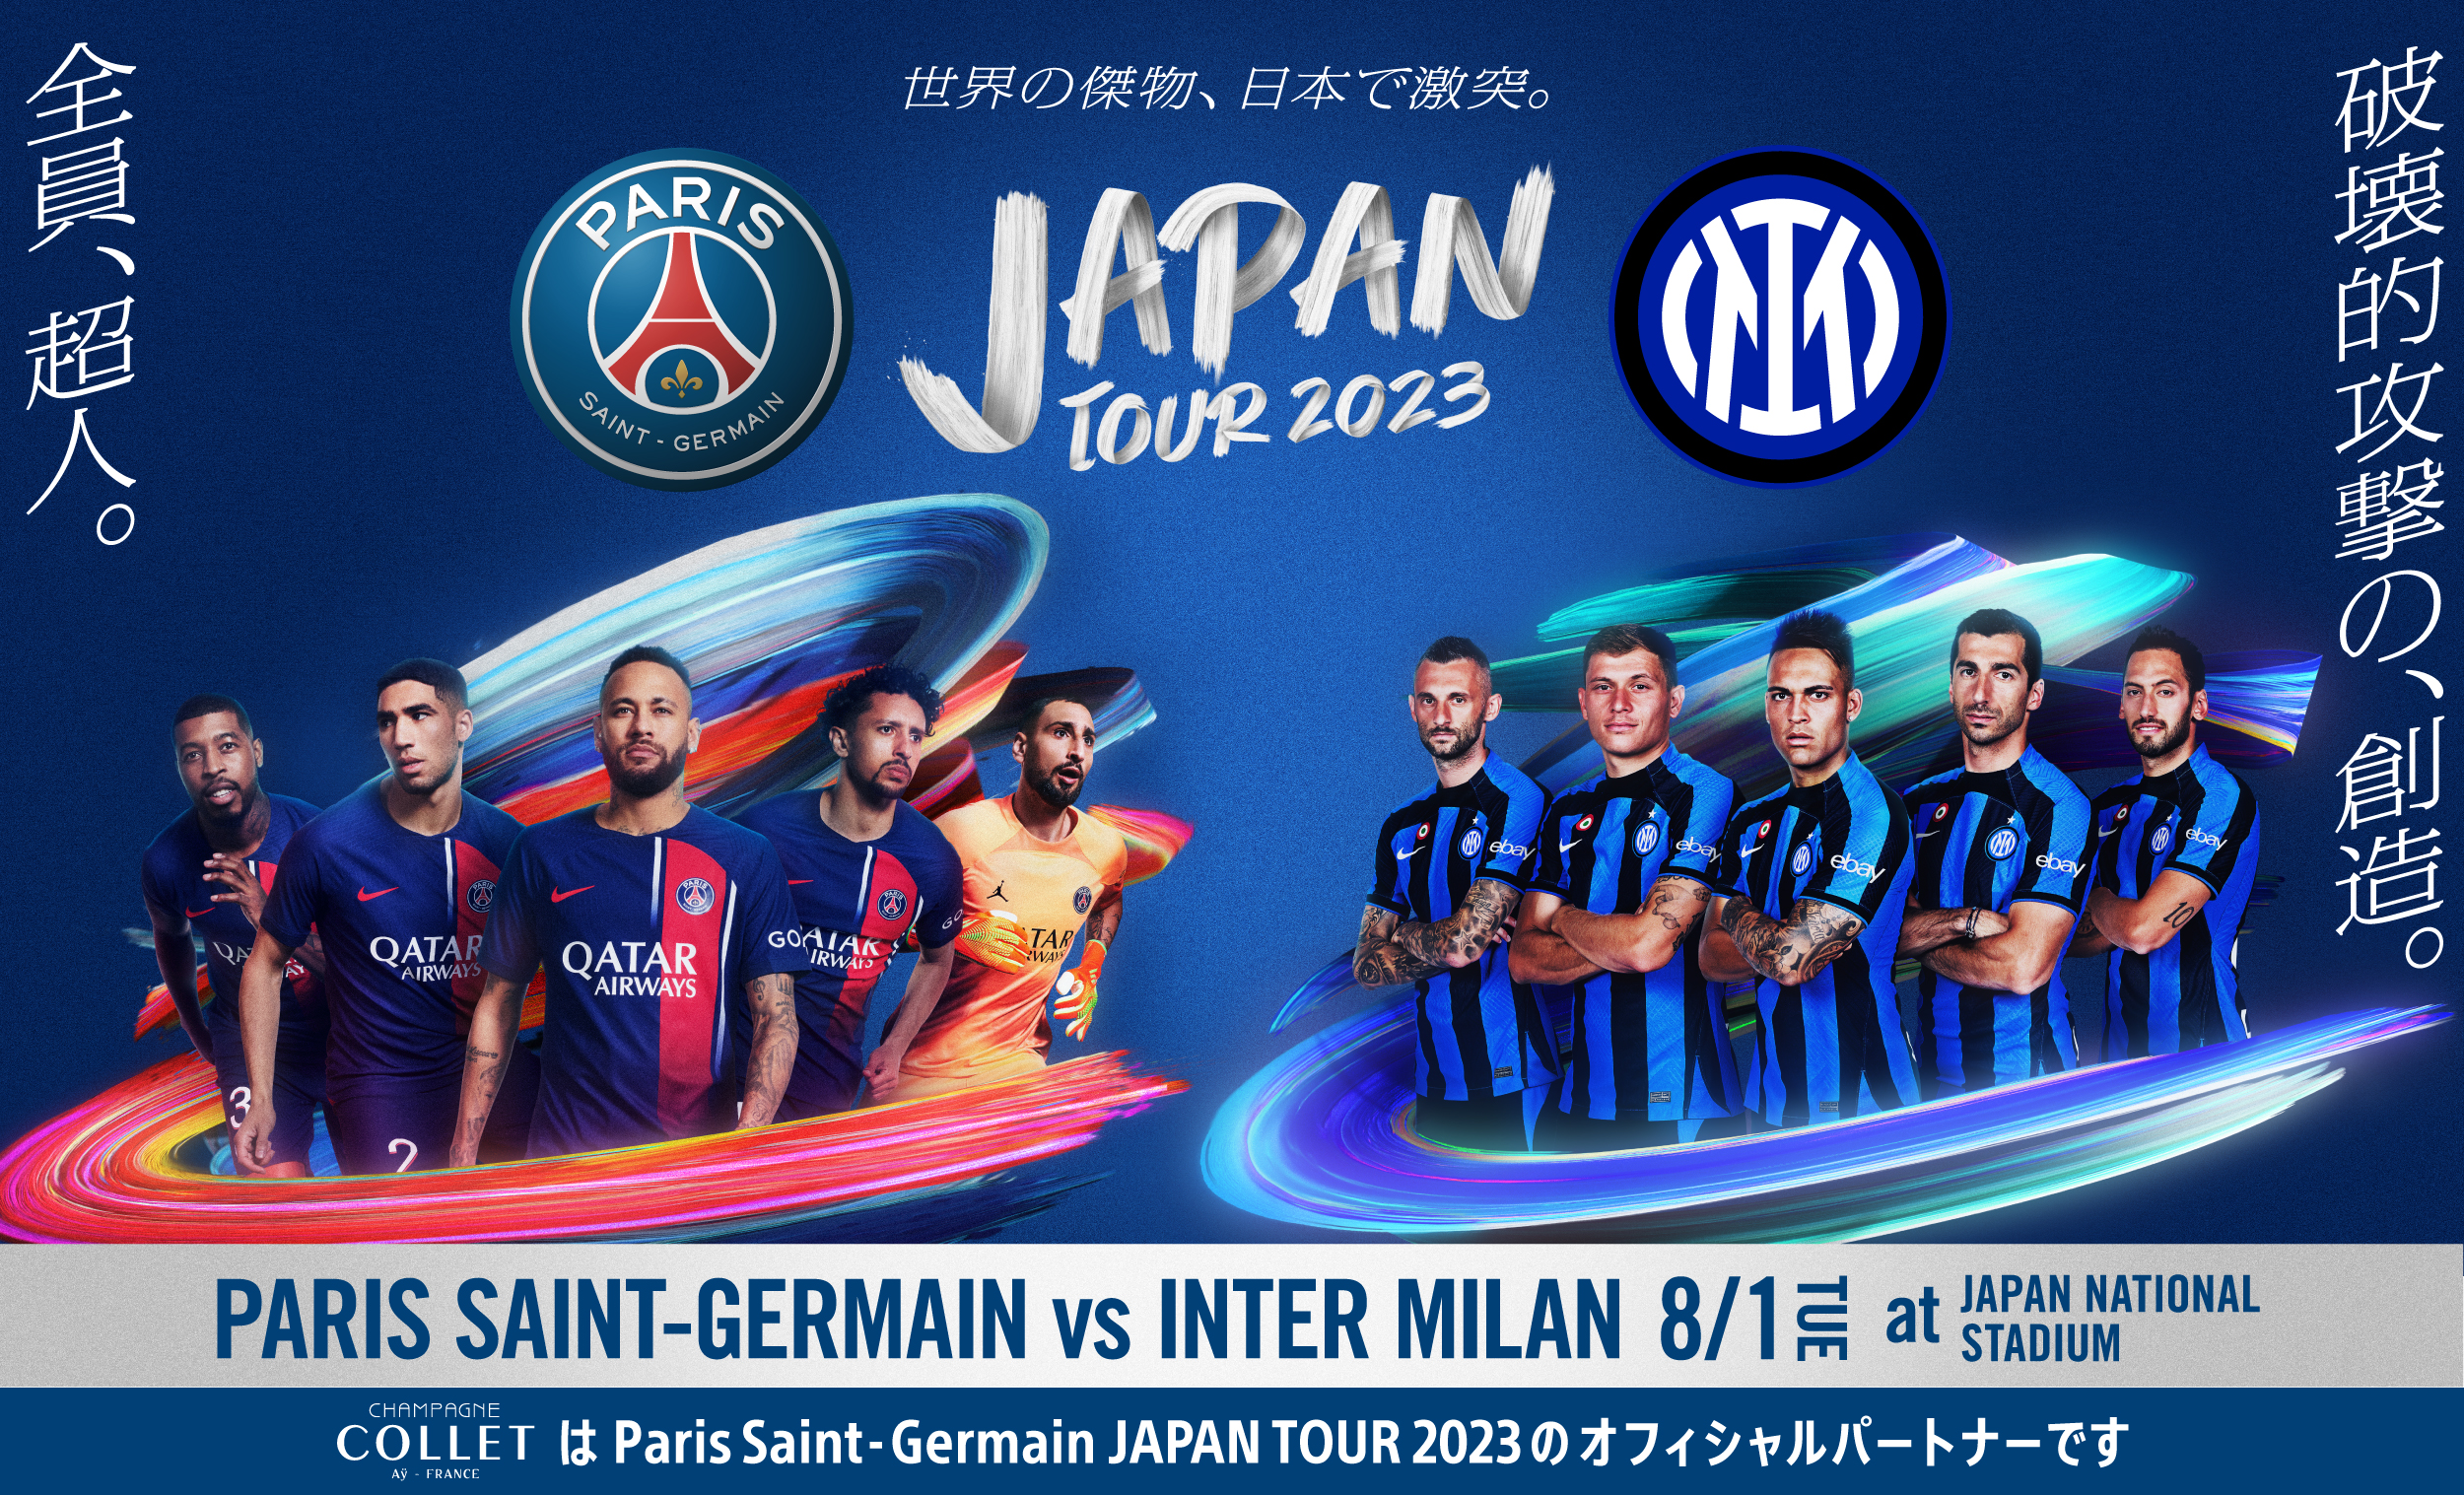 Paris Saint-Germain JAPAN TOUR 2023の オフィシャルパートナーに決定 ...